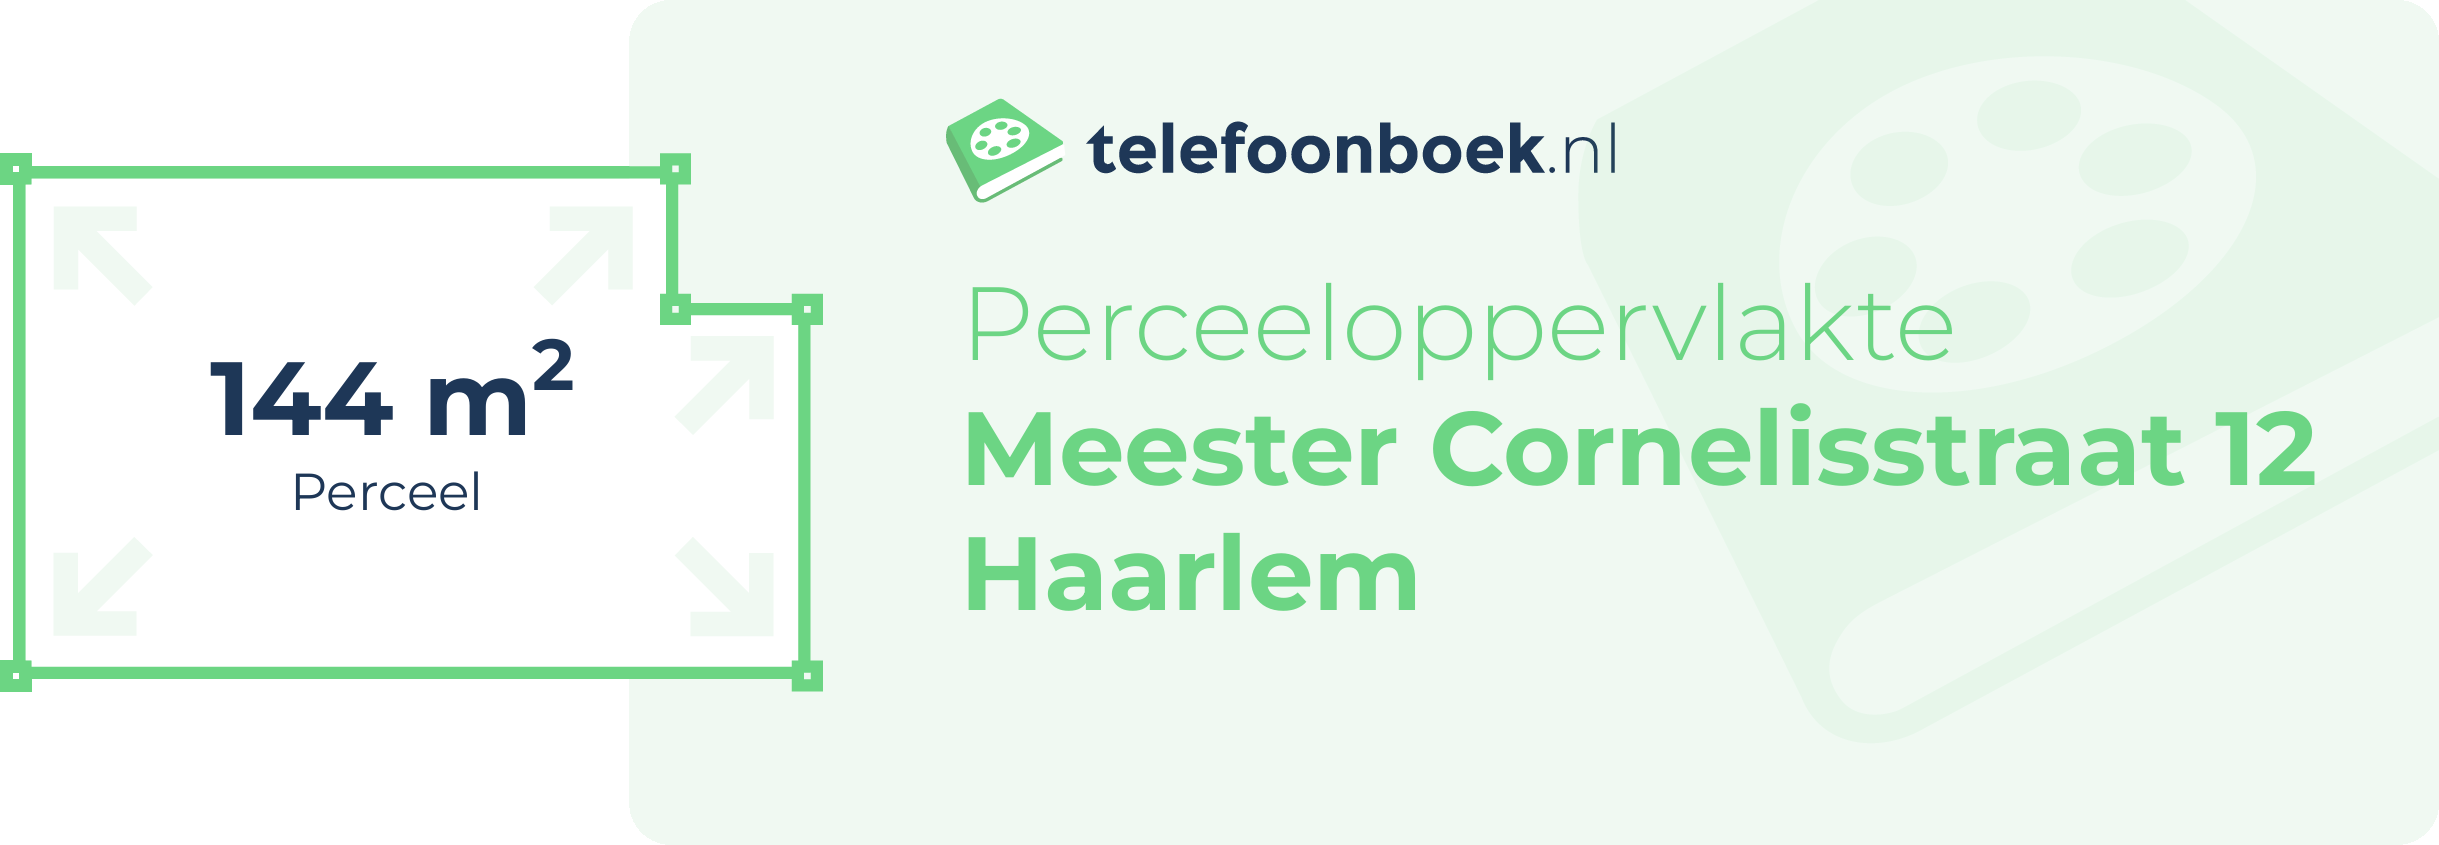 Perceeloppervlakte Meester Cornelisstraat 12 Haarlem